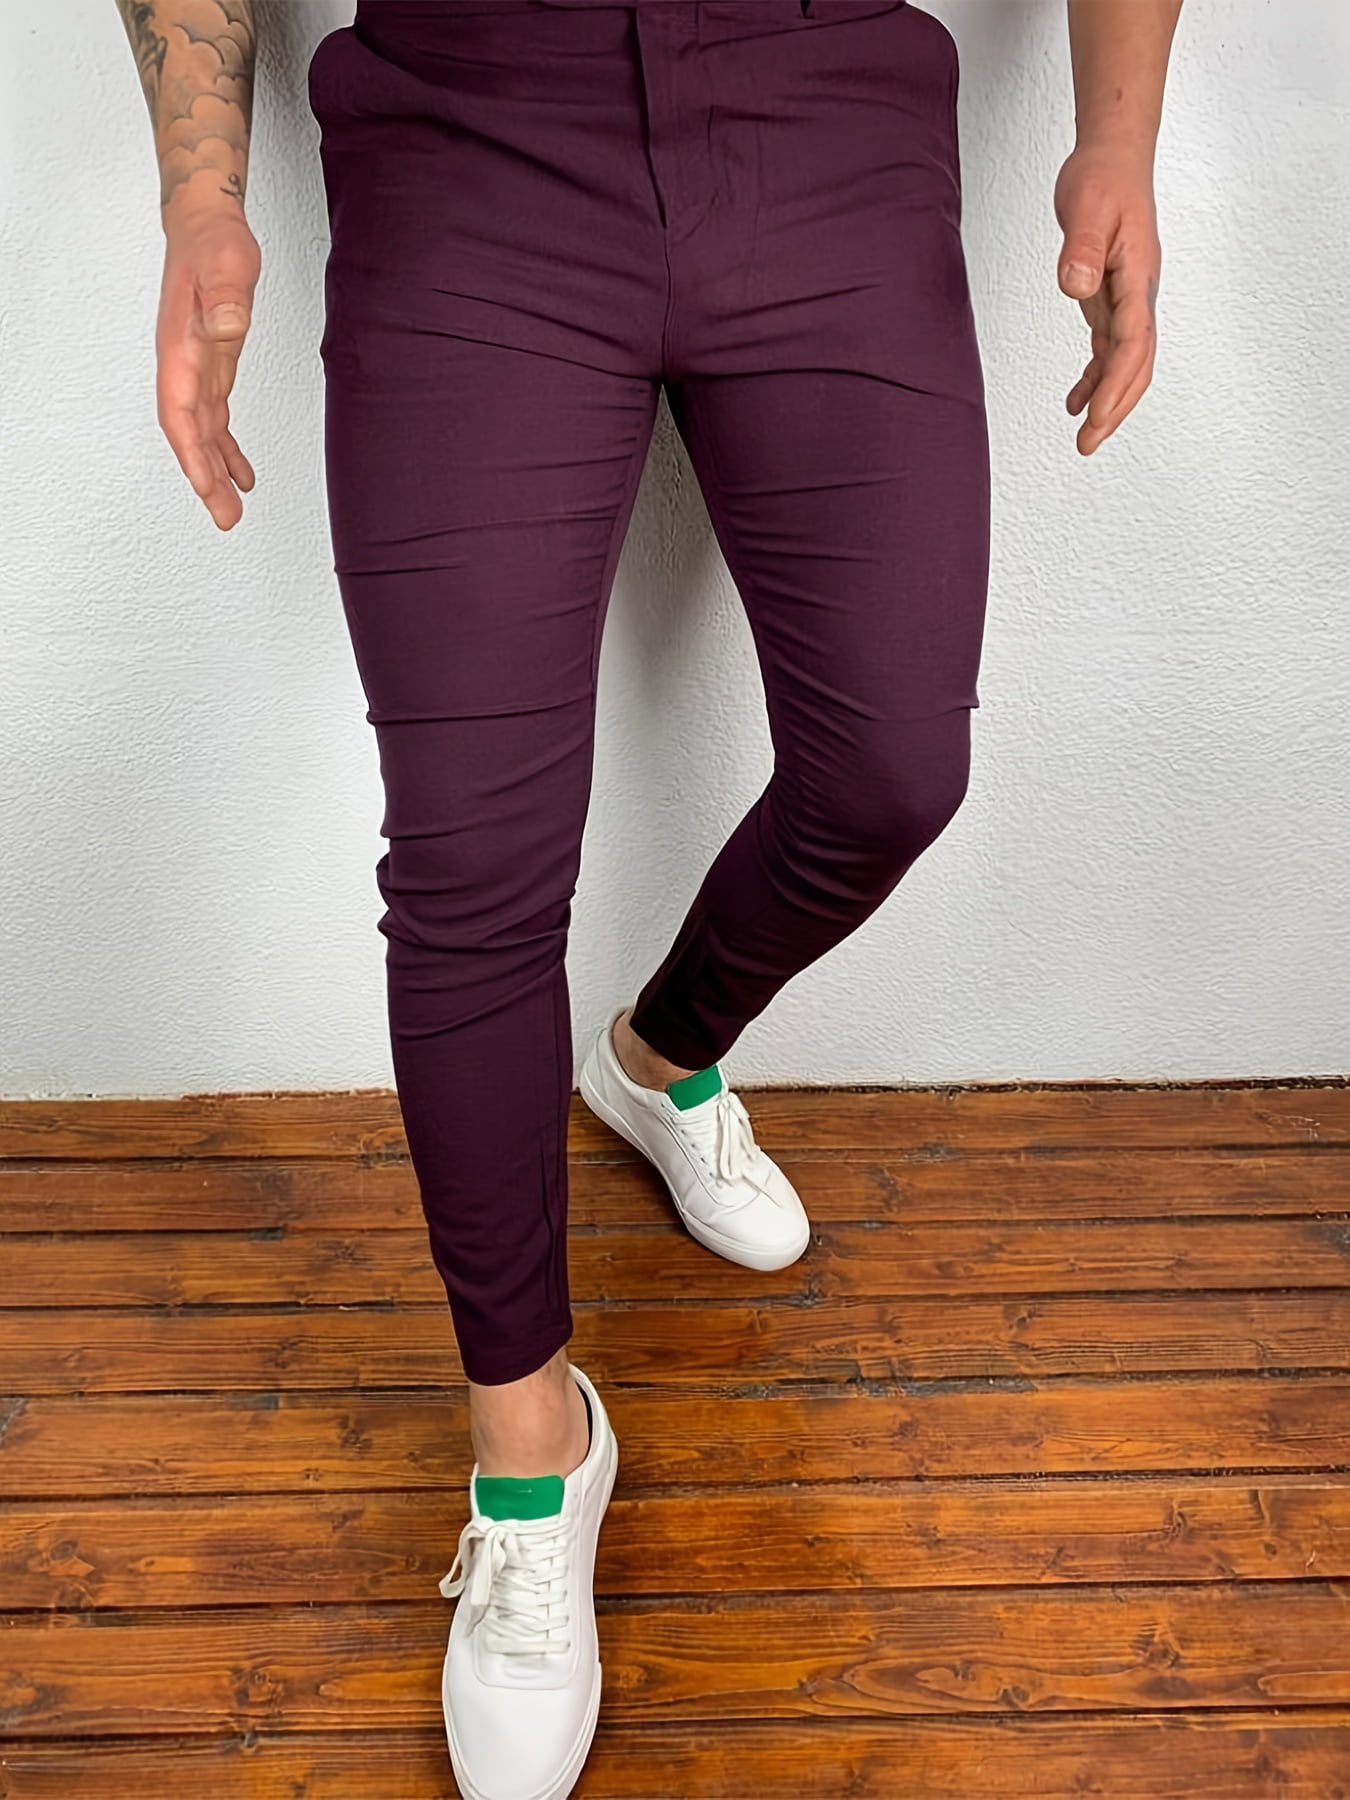 New Men's Casual Slim Fit Pants Walmart.com